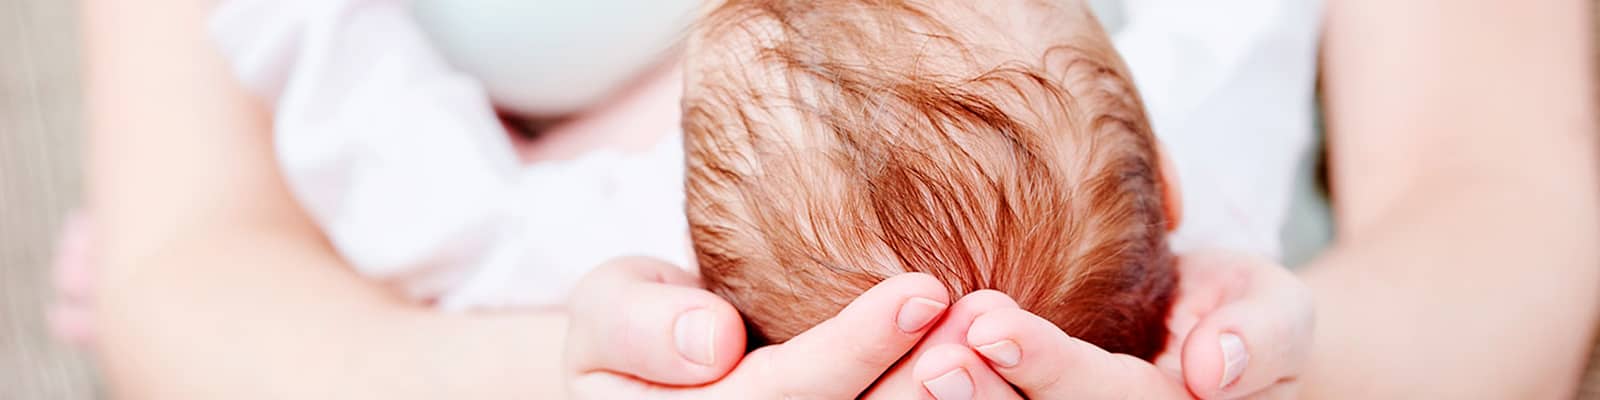 Plagiocefalia o deformidad craneal del bebé